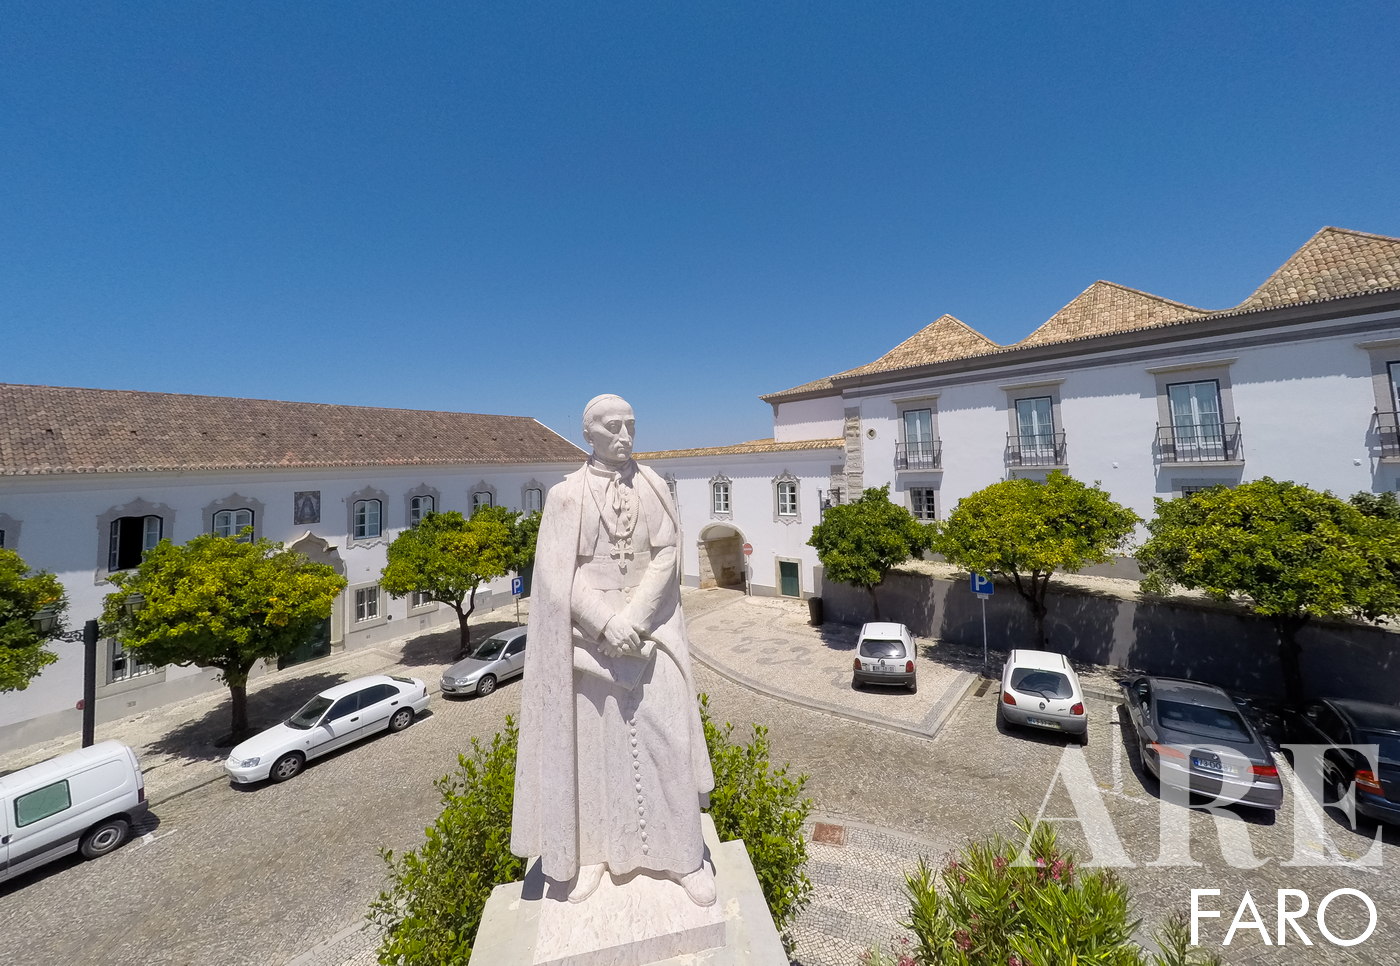 D. Francisco Gomes de Avelar fue el encargado de rediseñar la ciudad de Faro a principios del siglo XIX